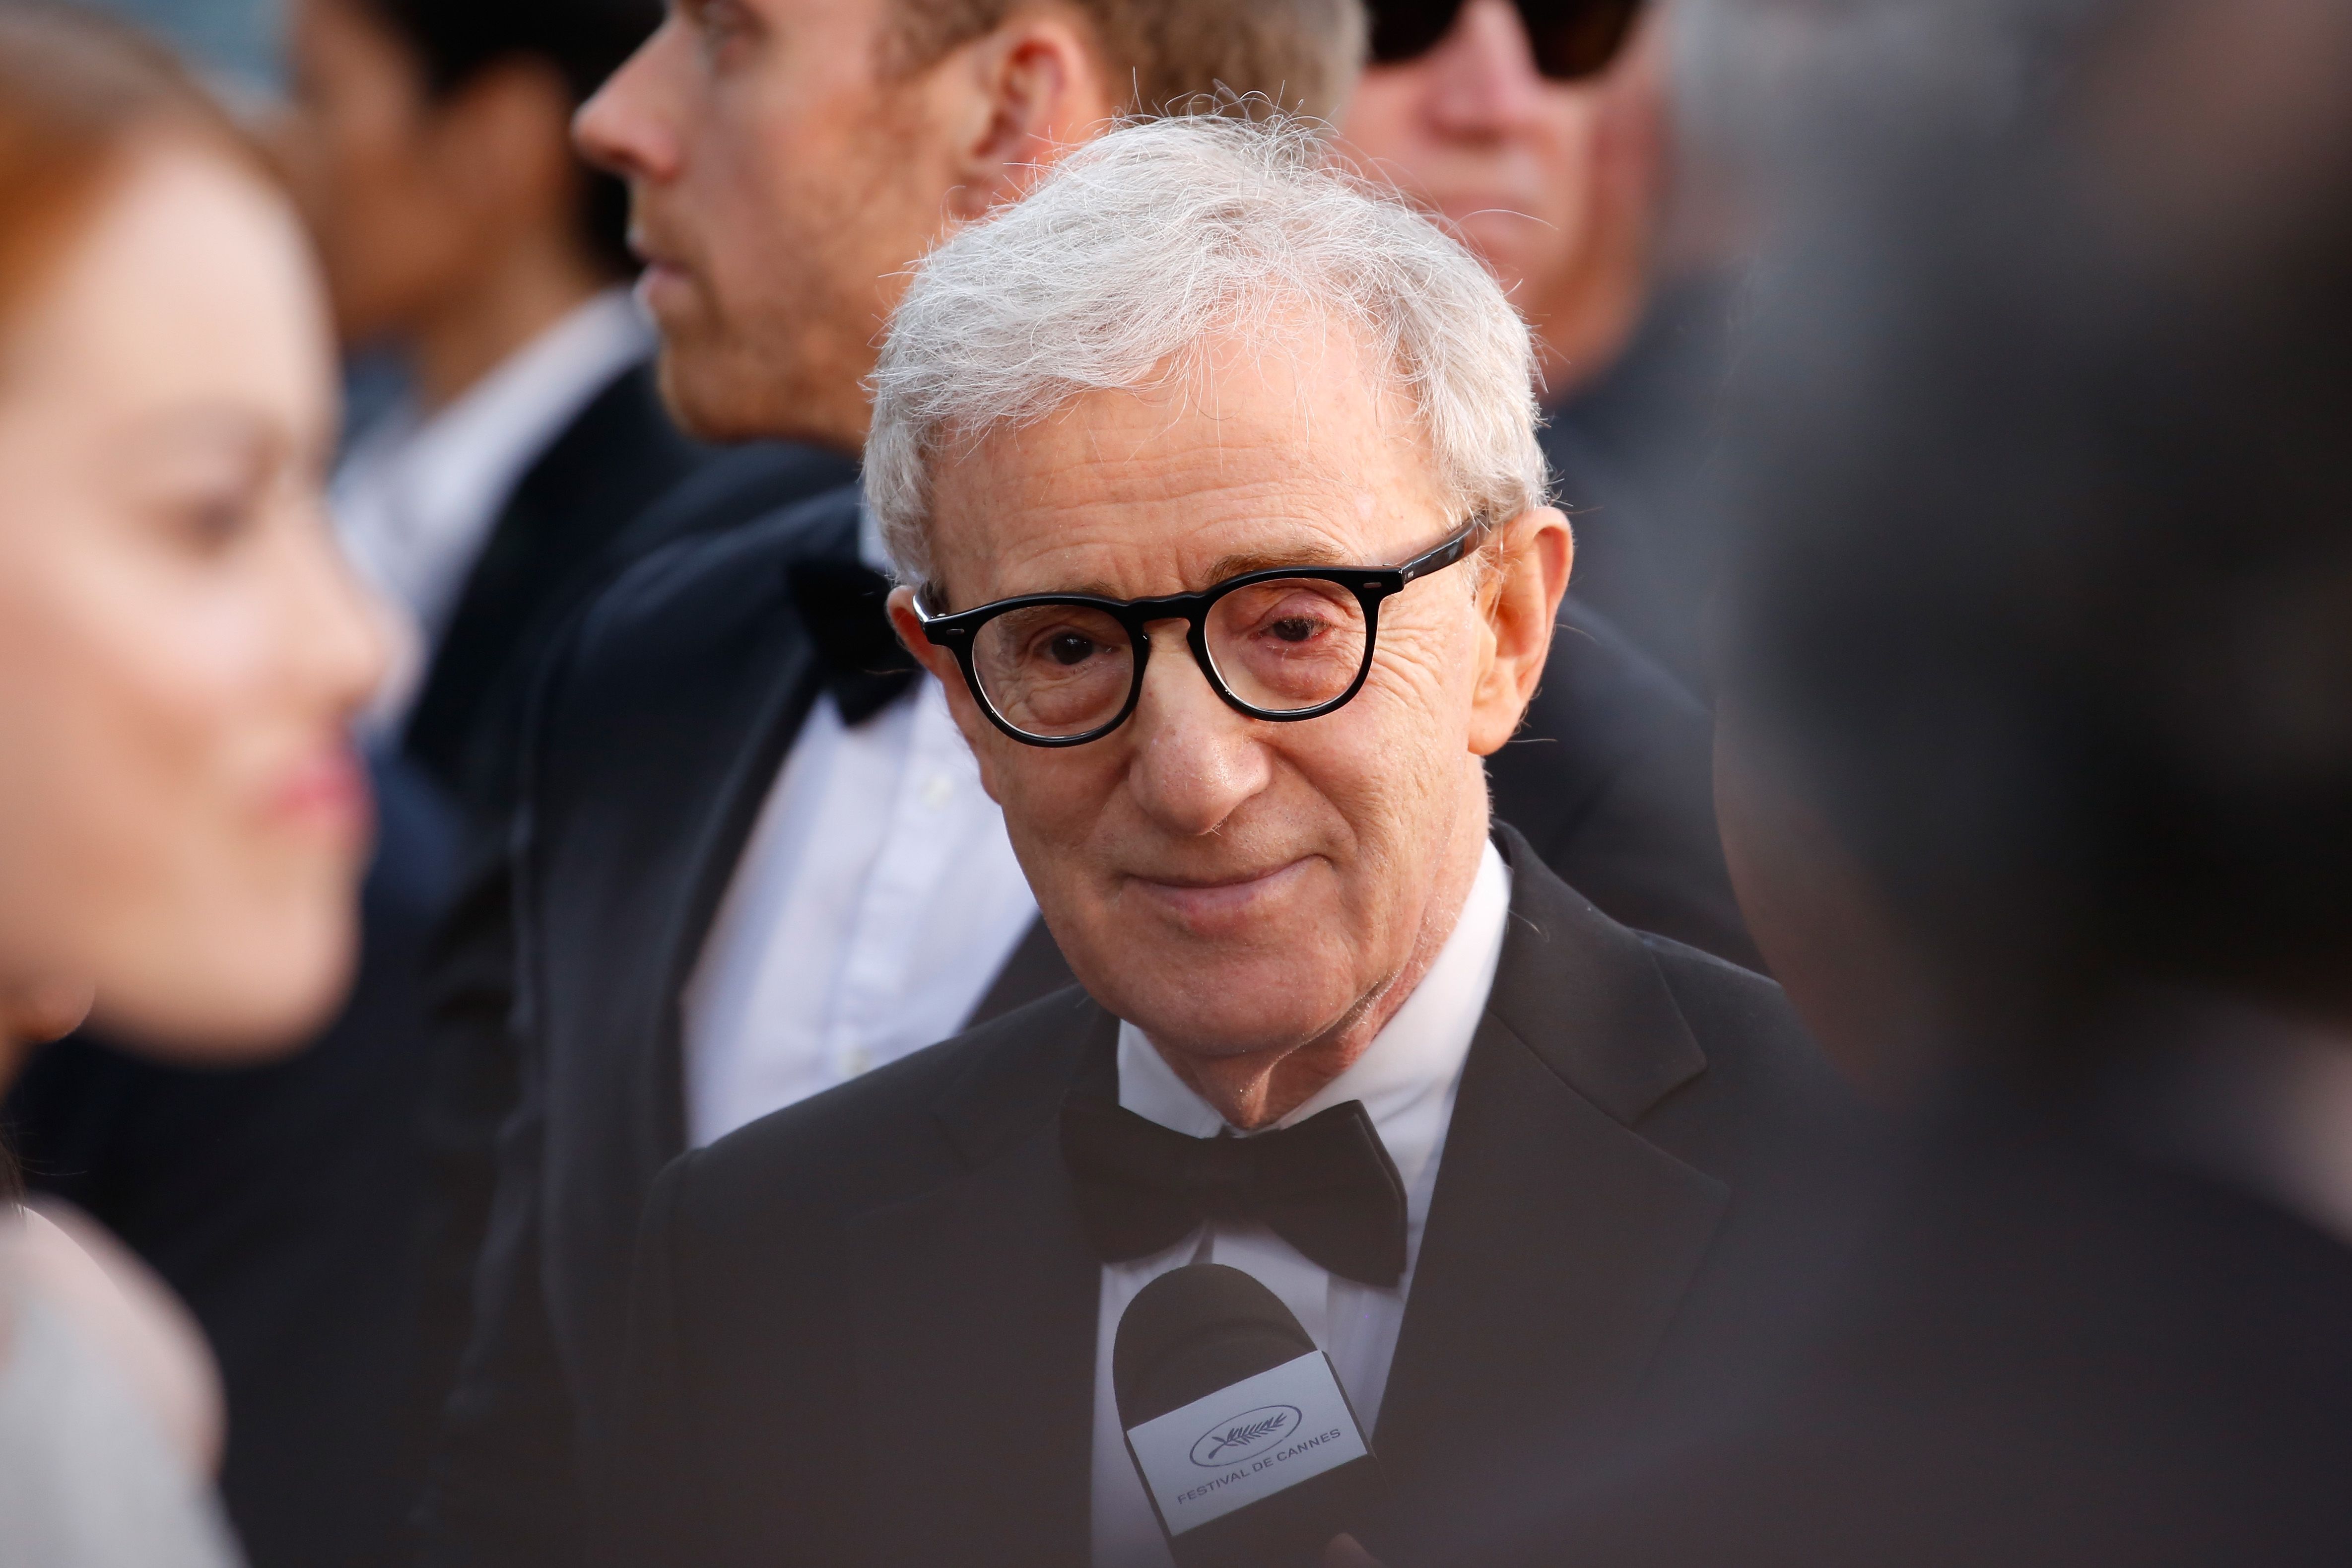 Woody Allen wearing a black suit